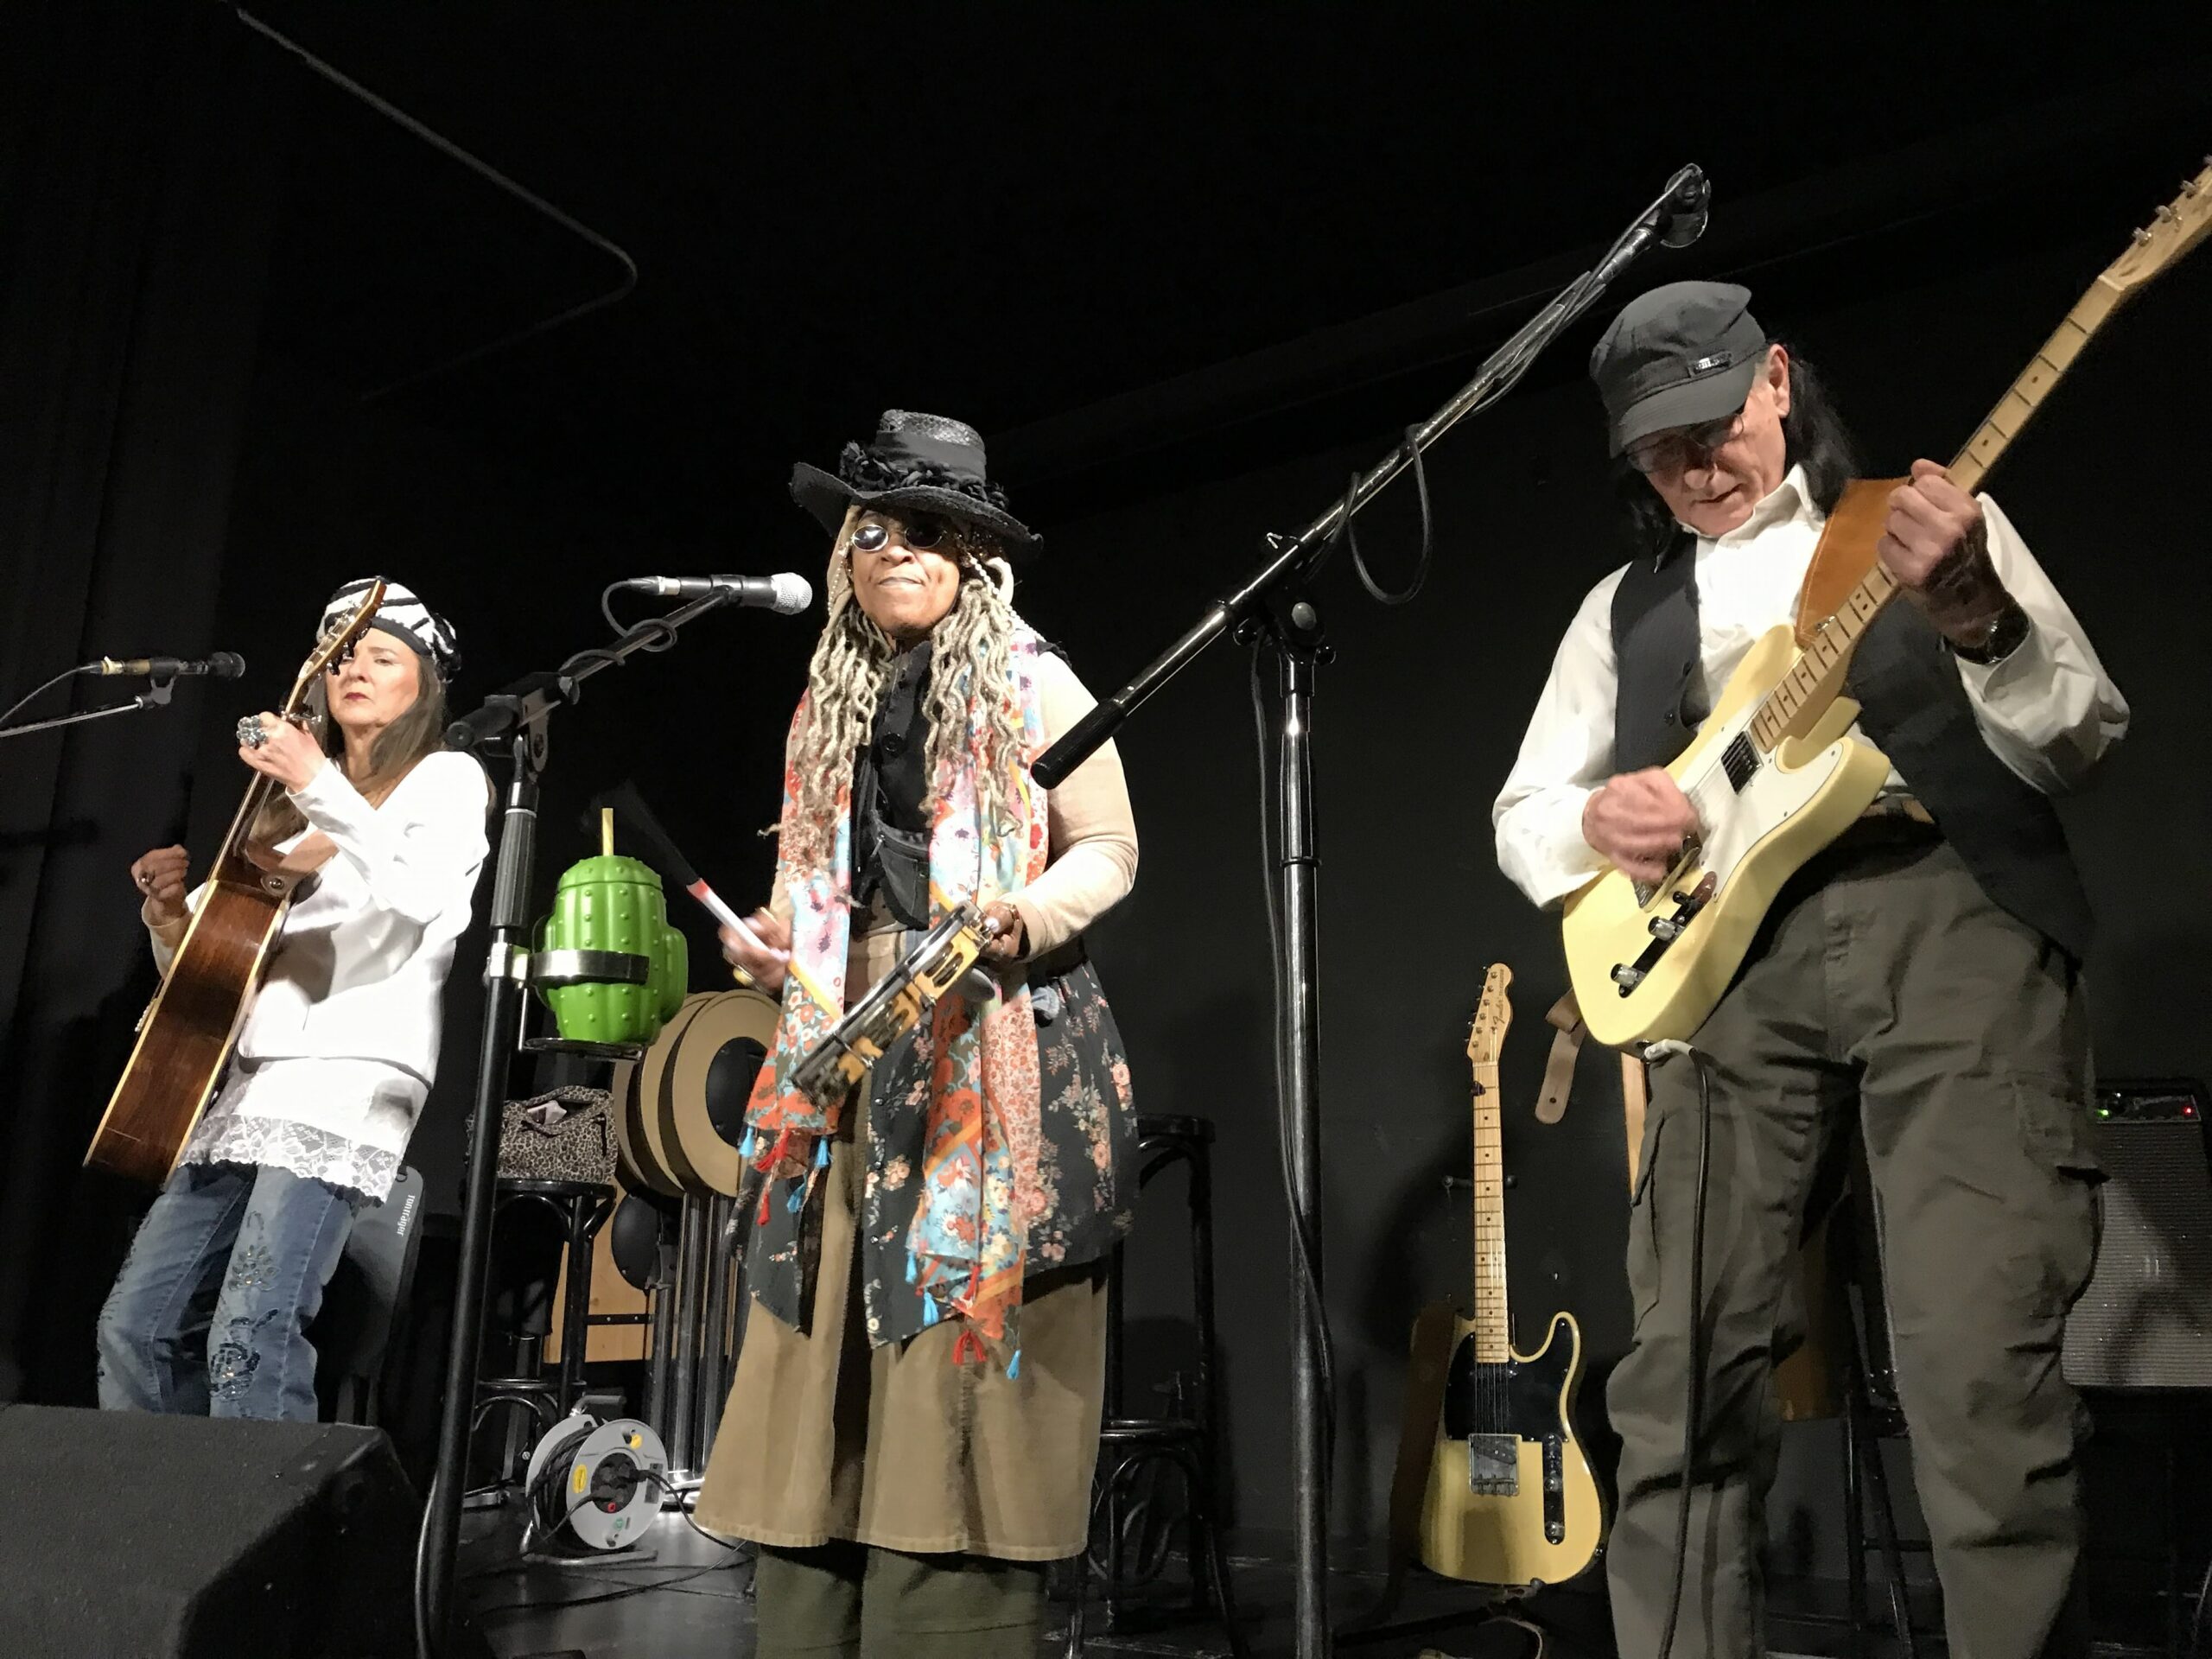 Ein Trio von zwei Frauen und einem Mann live auf der Bühne, mit Gitarre, E-Gitarre und Mikro für Gesang. Alle tragen einen Hut oder eine Mütze.